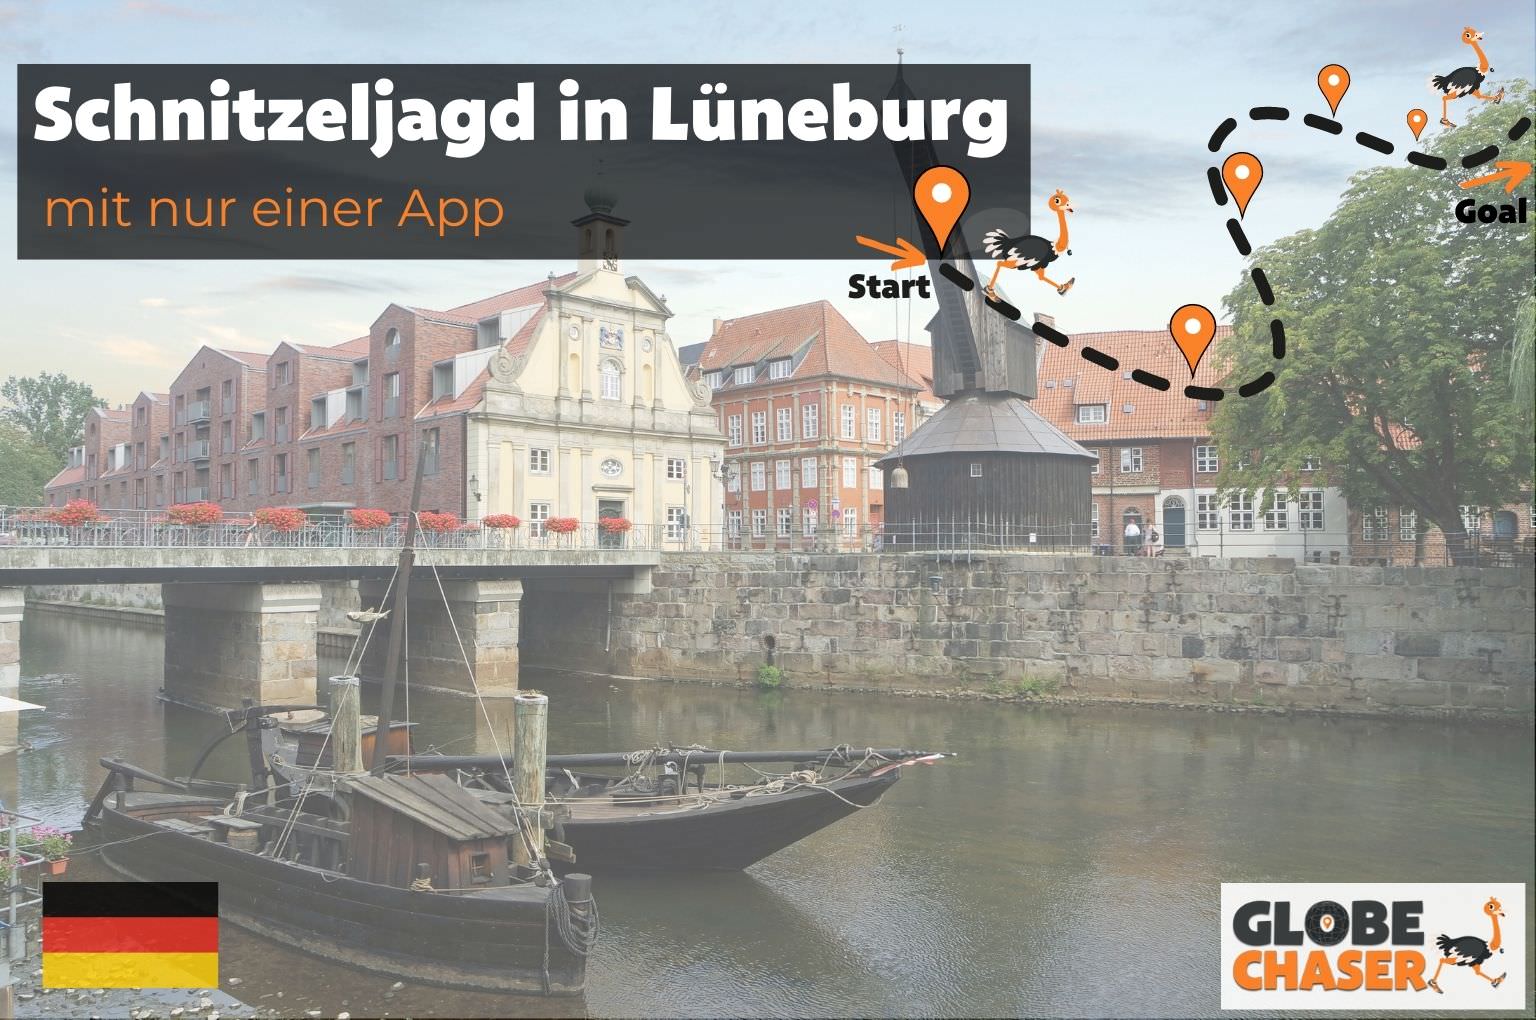 Schnitzeljagd in Lueneburg mit App - Globe Chaser Erlebnisse Deutschland